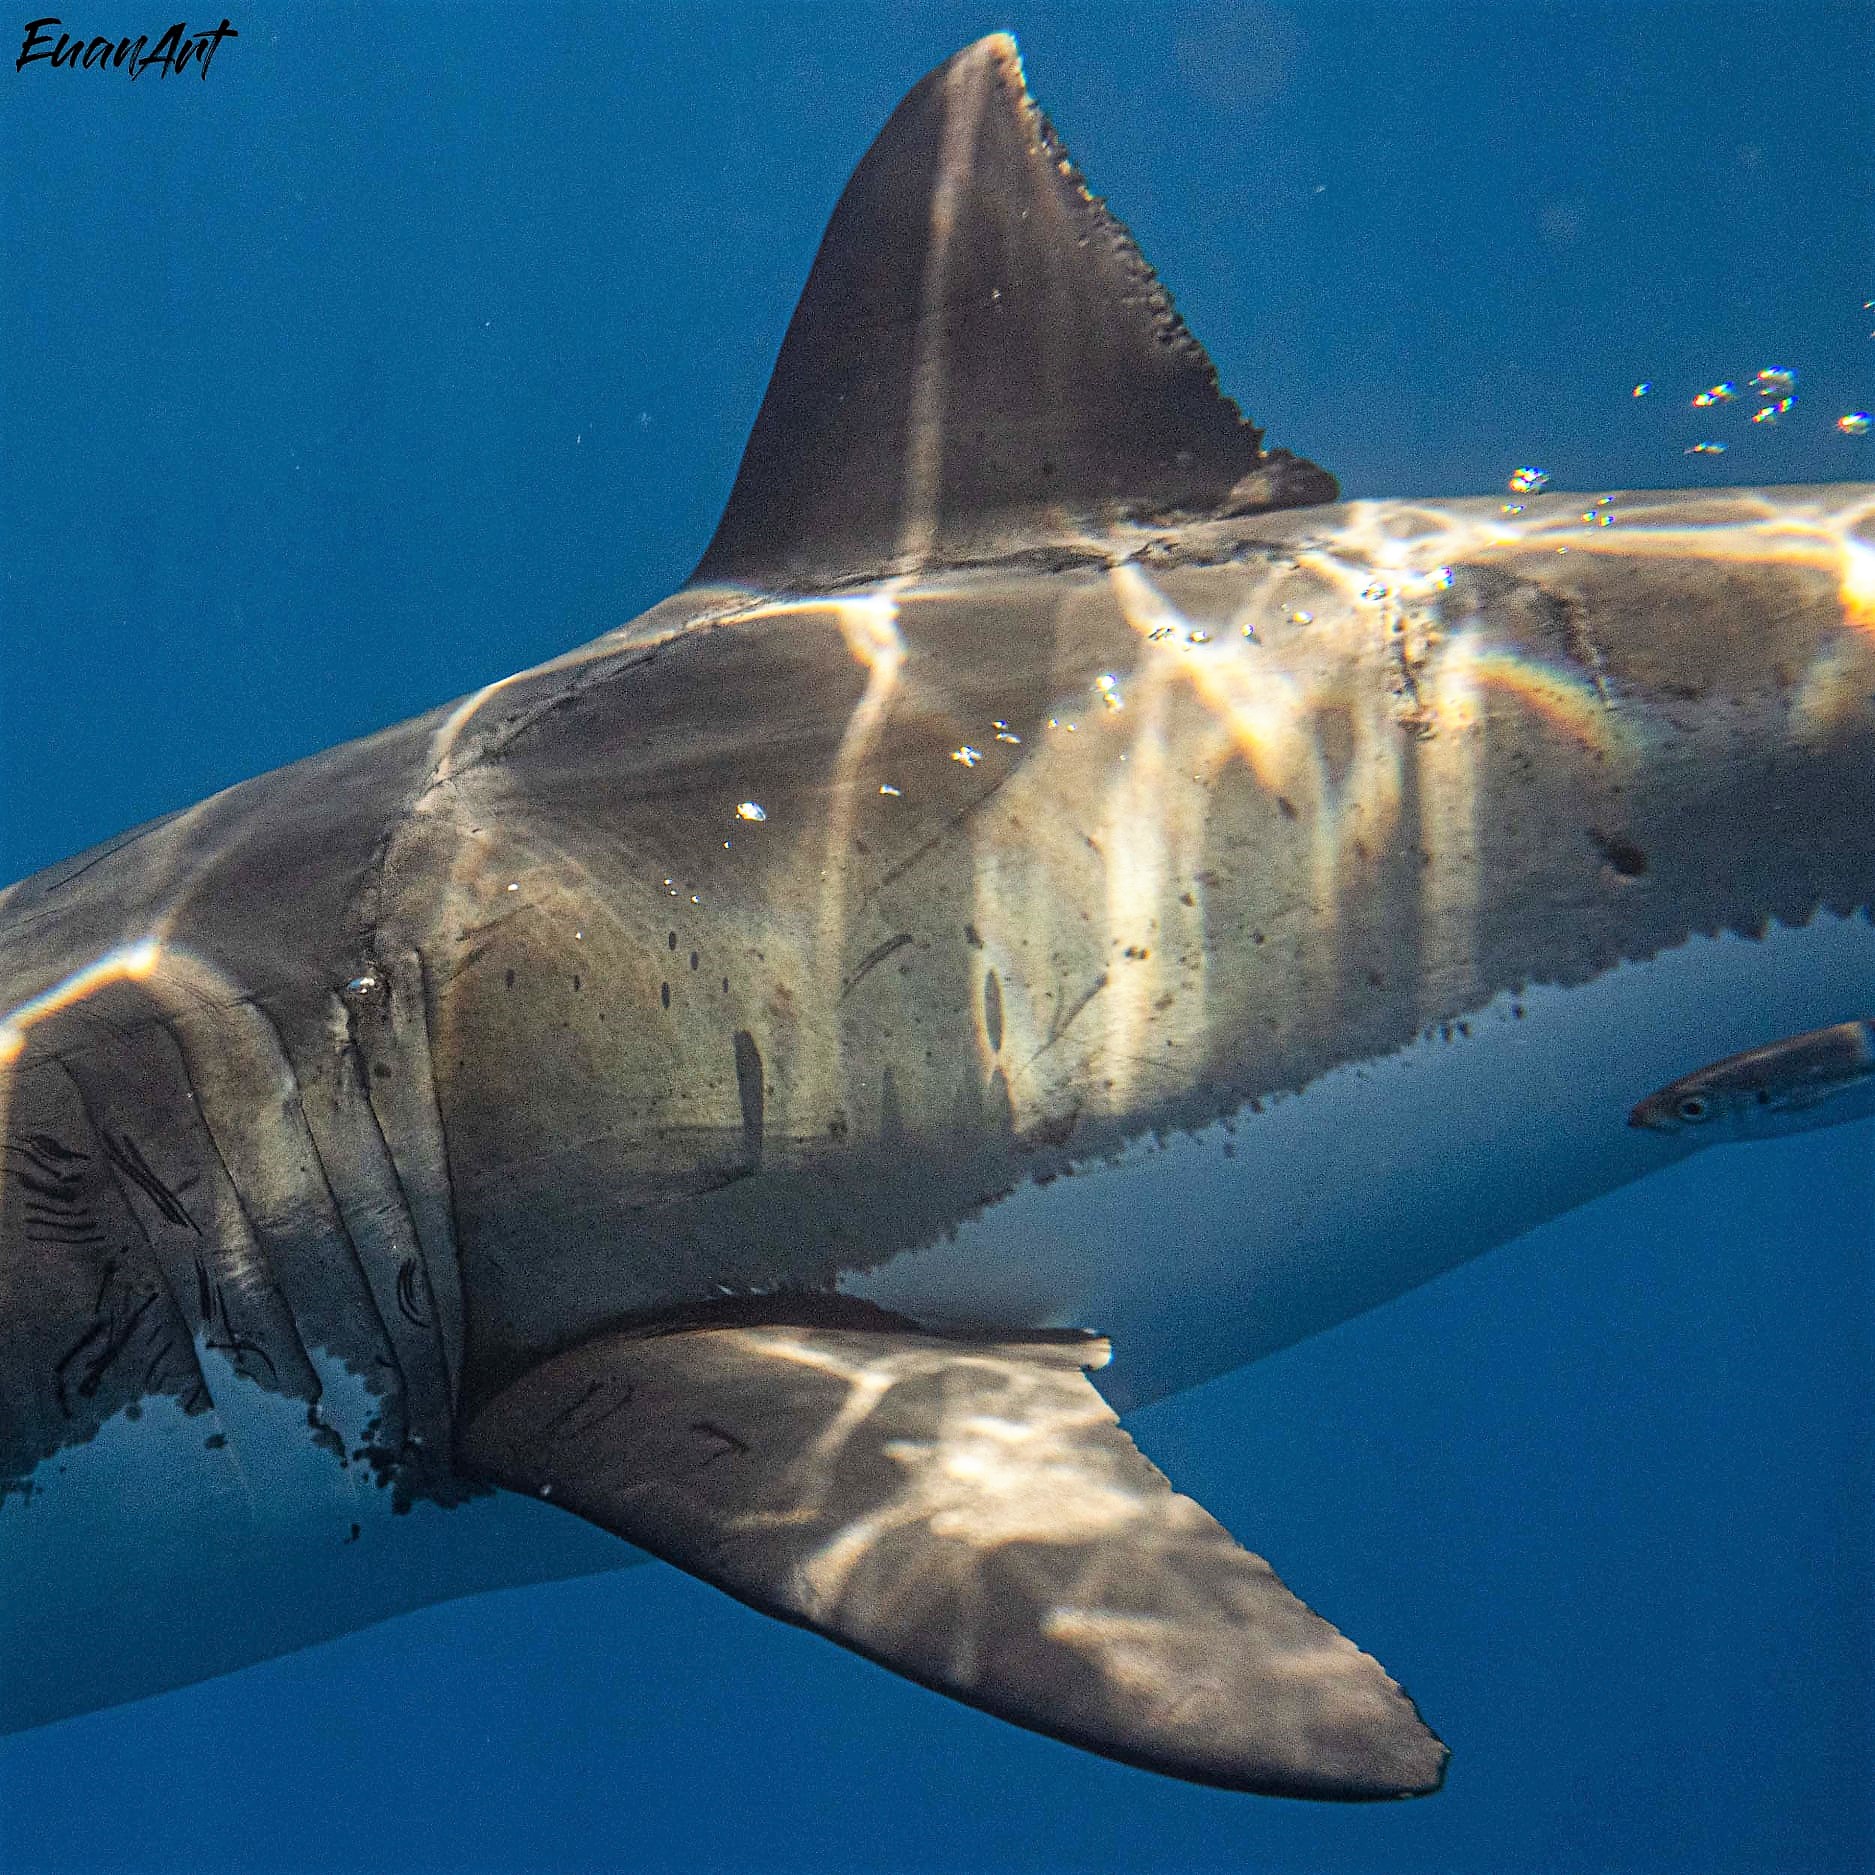 POssible Meaglodon bite on white shark